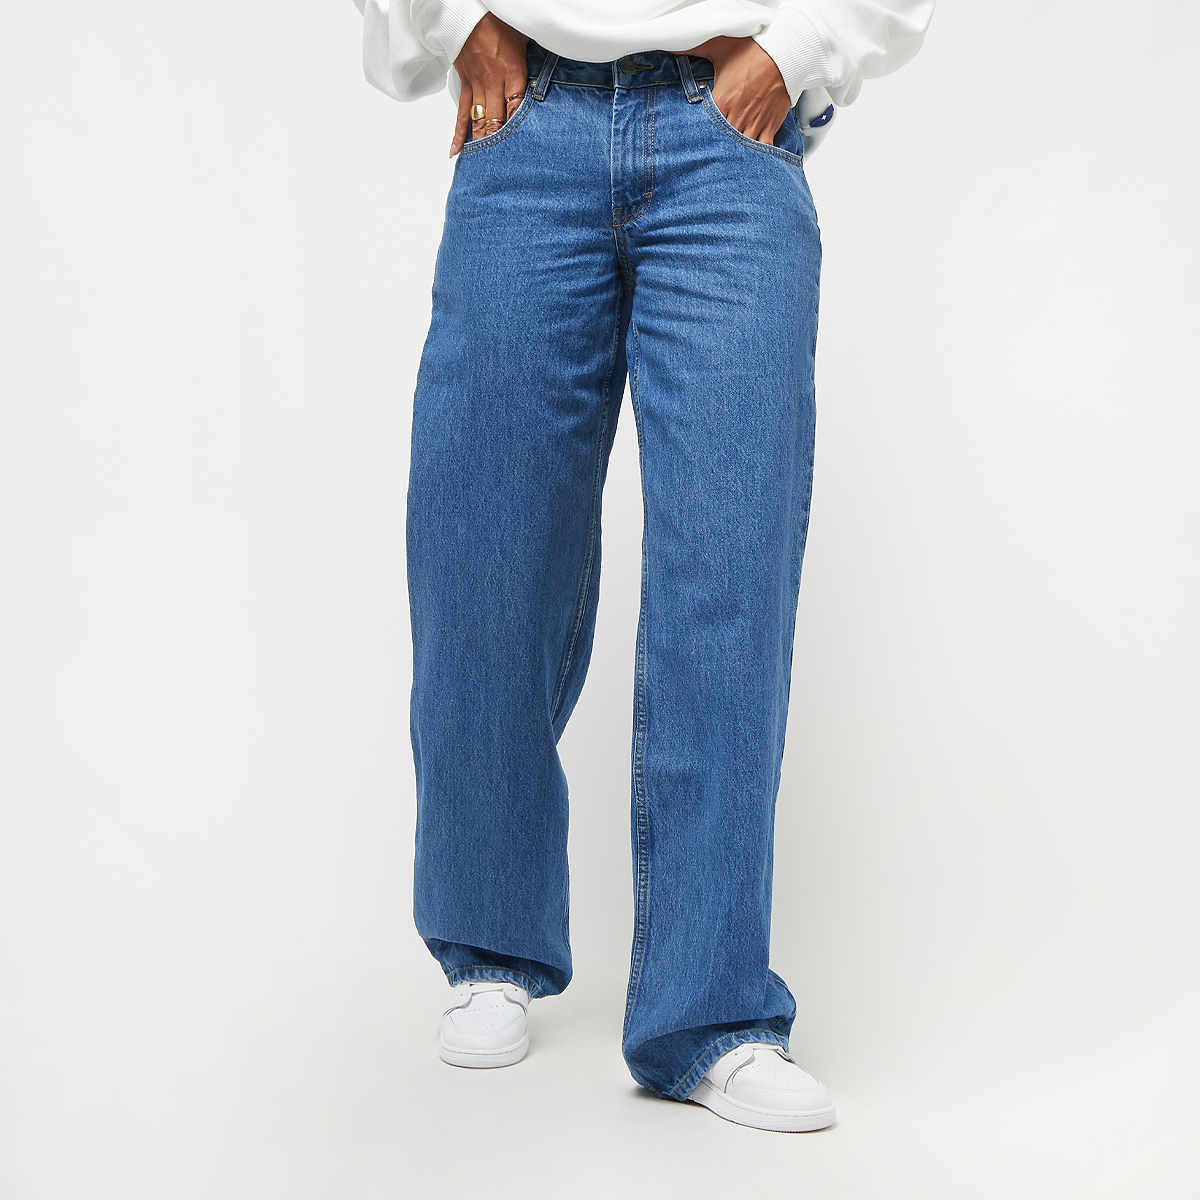 reell women holly jeans origin, pantalons en jean, vêtements, mid blue, taille: 27, tailles disponibles:27,28